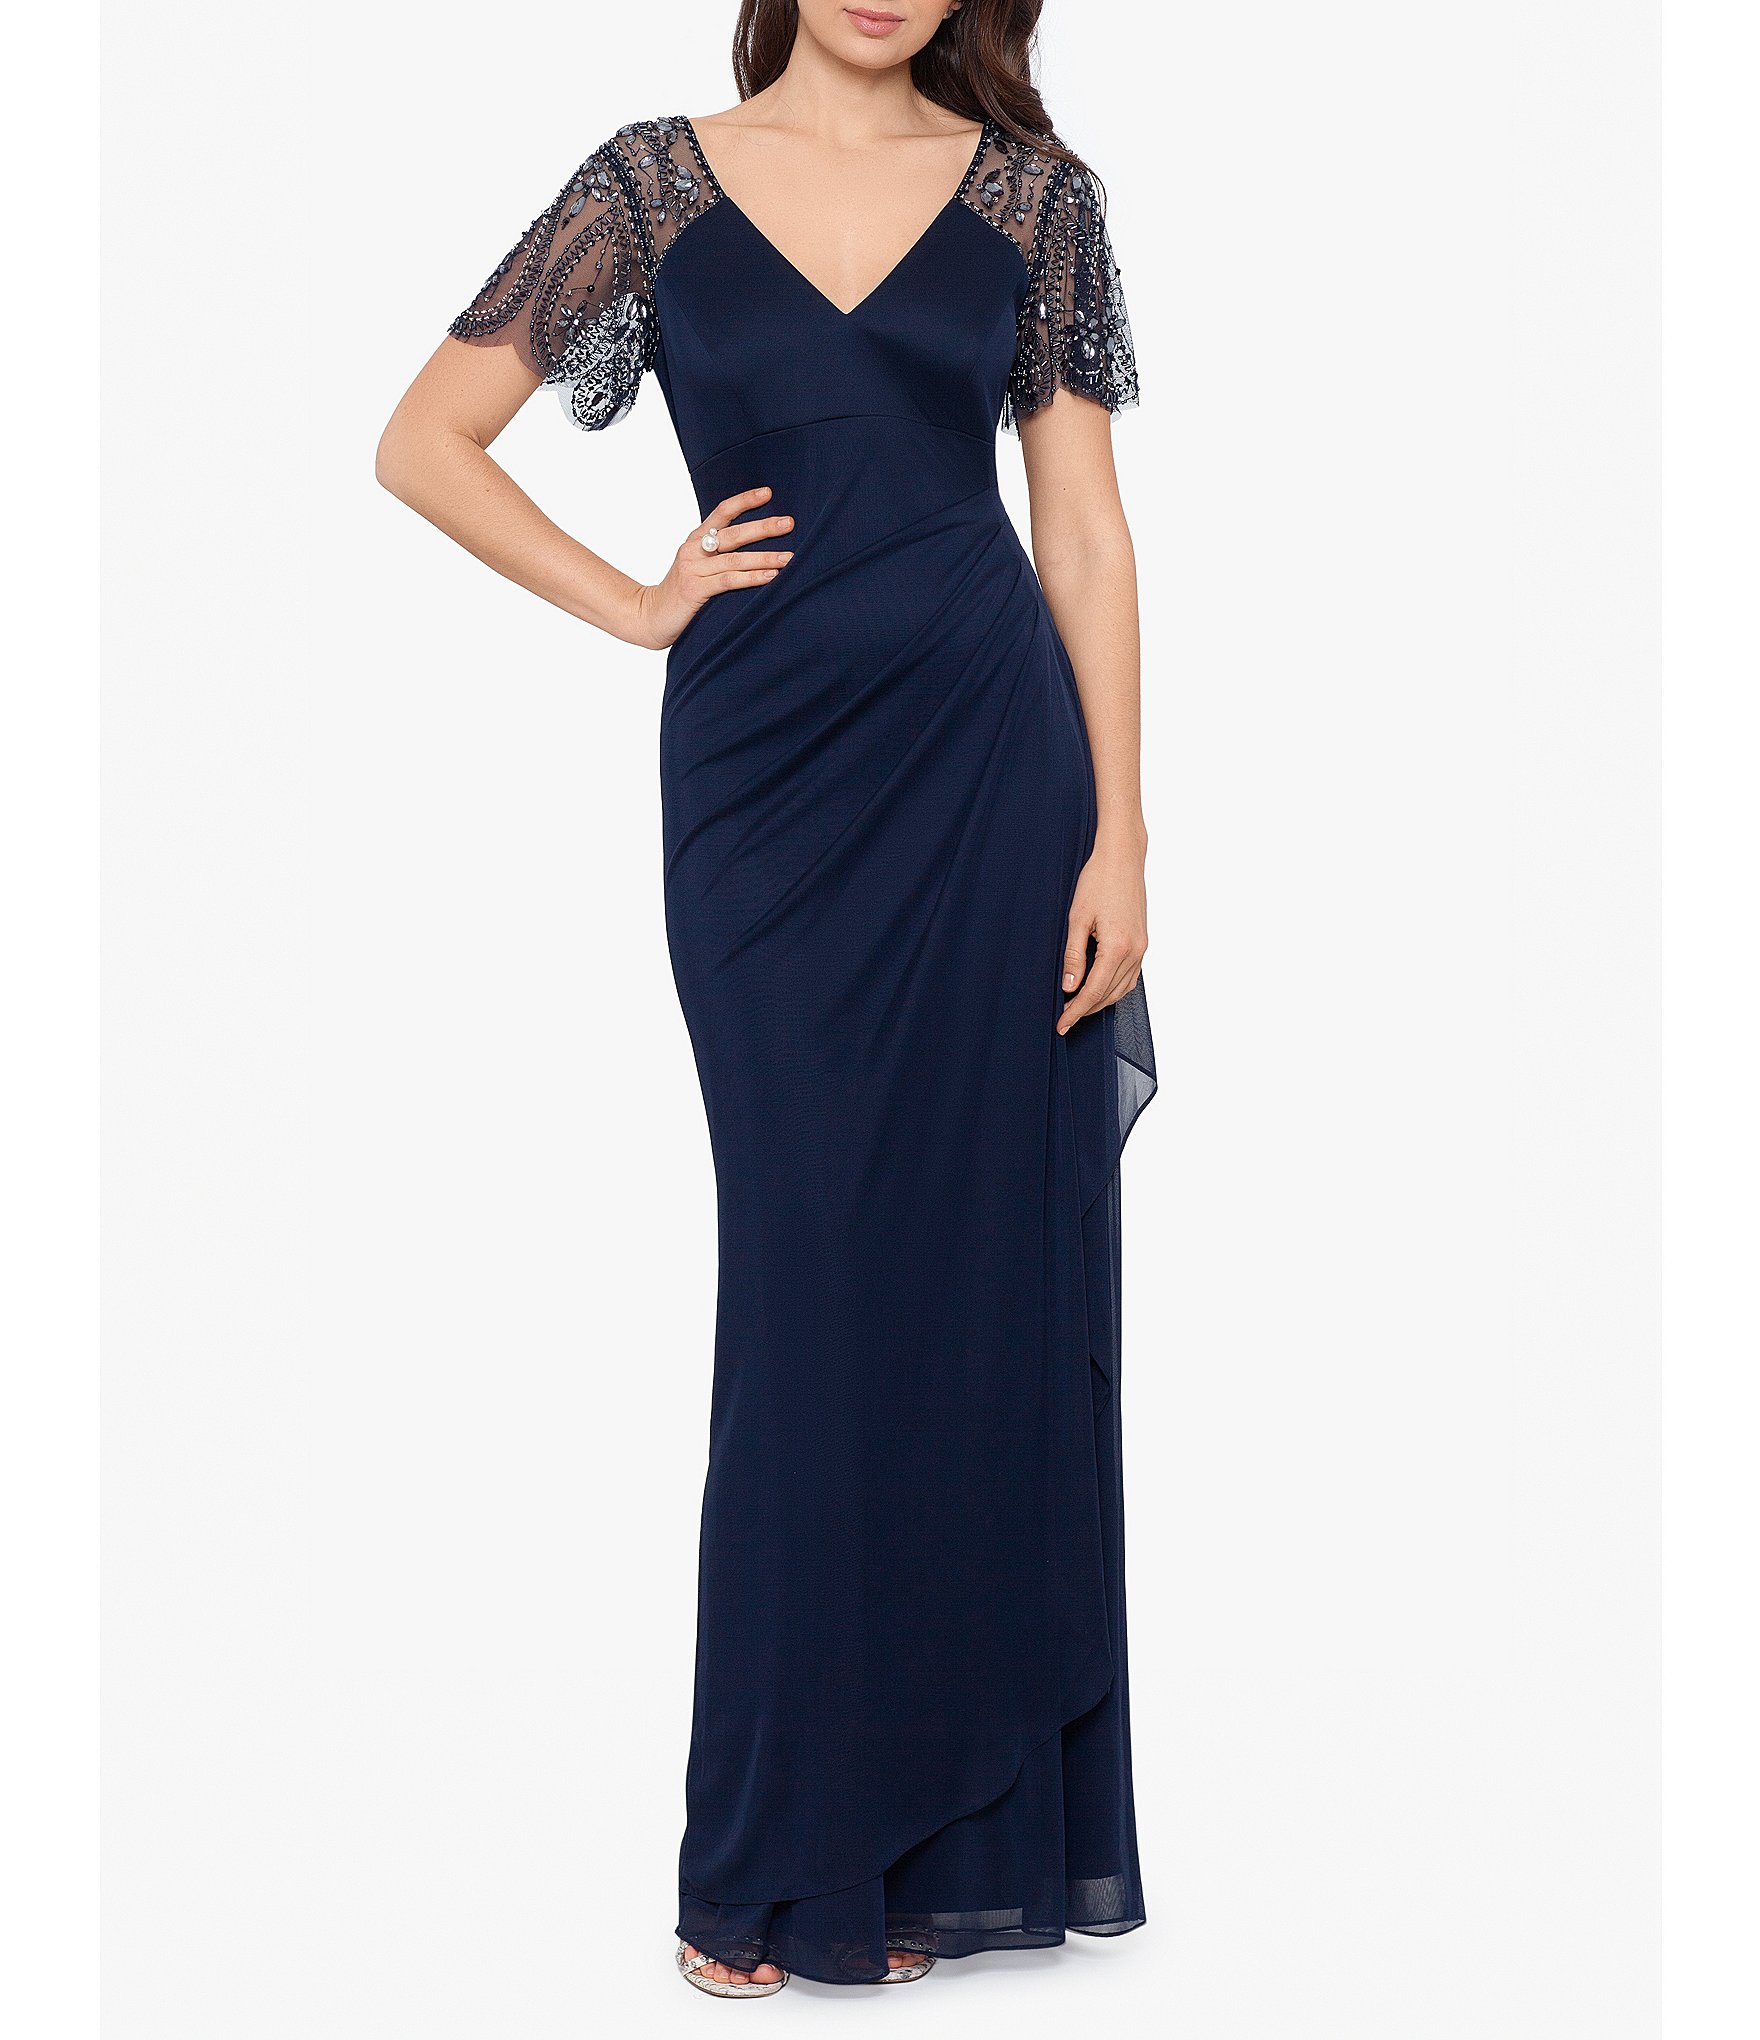 Sale & Clearance Drop Waist Women's Formal Dresses & Evening Gowns |  Dillard's